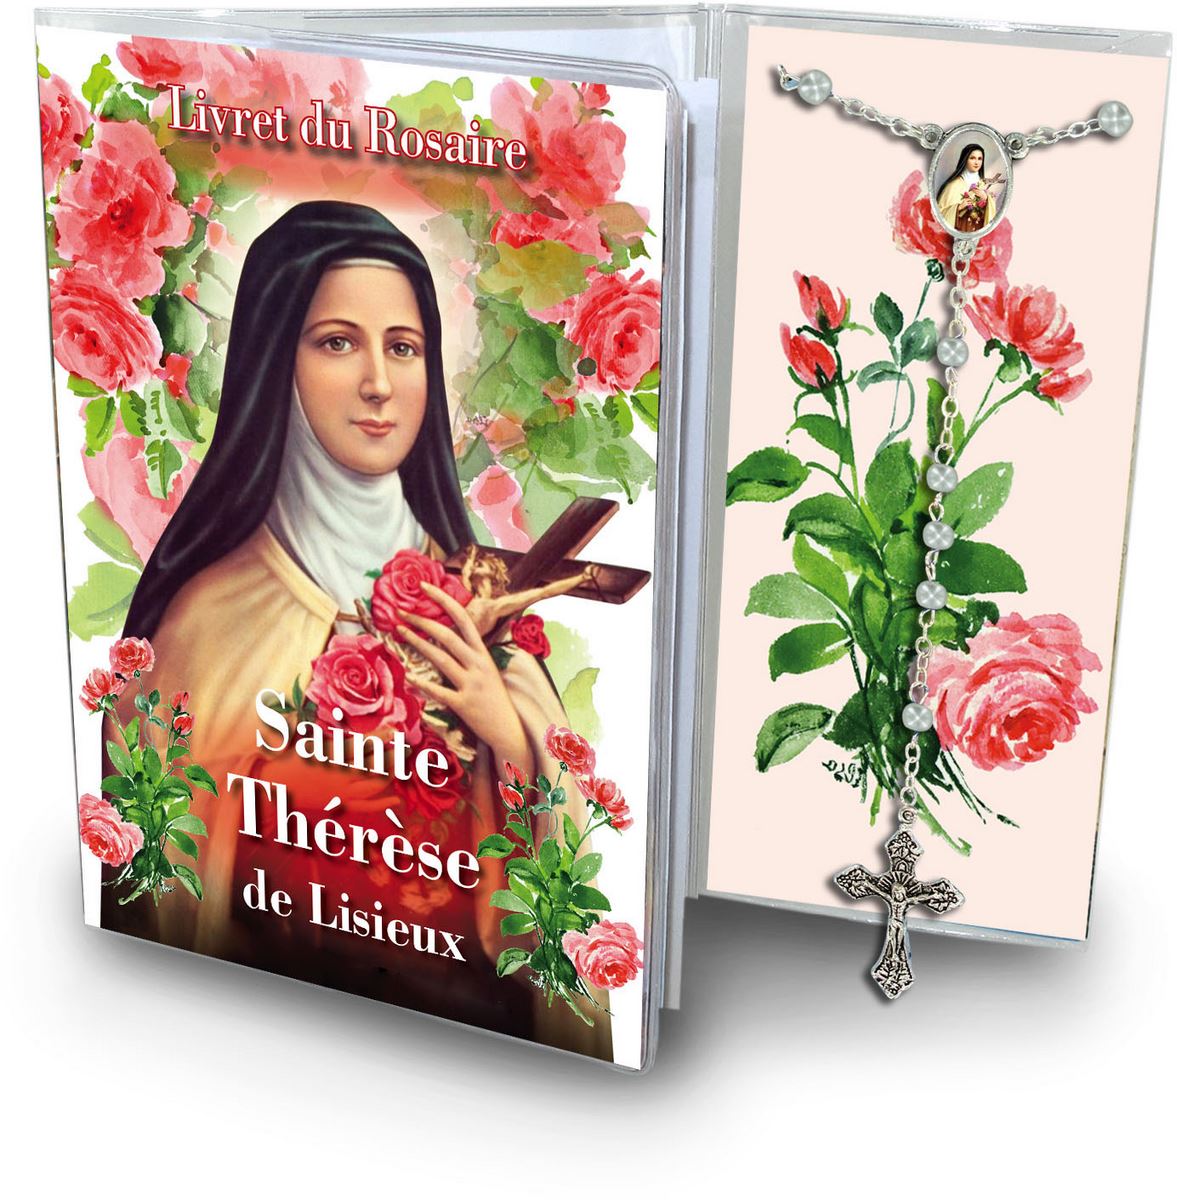 libretto con rosario santa teresa di lisieux - francese